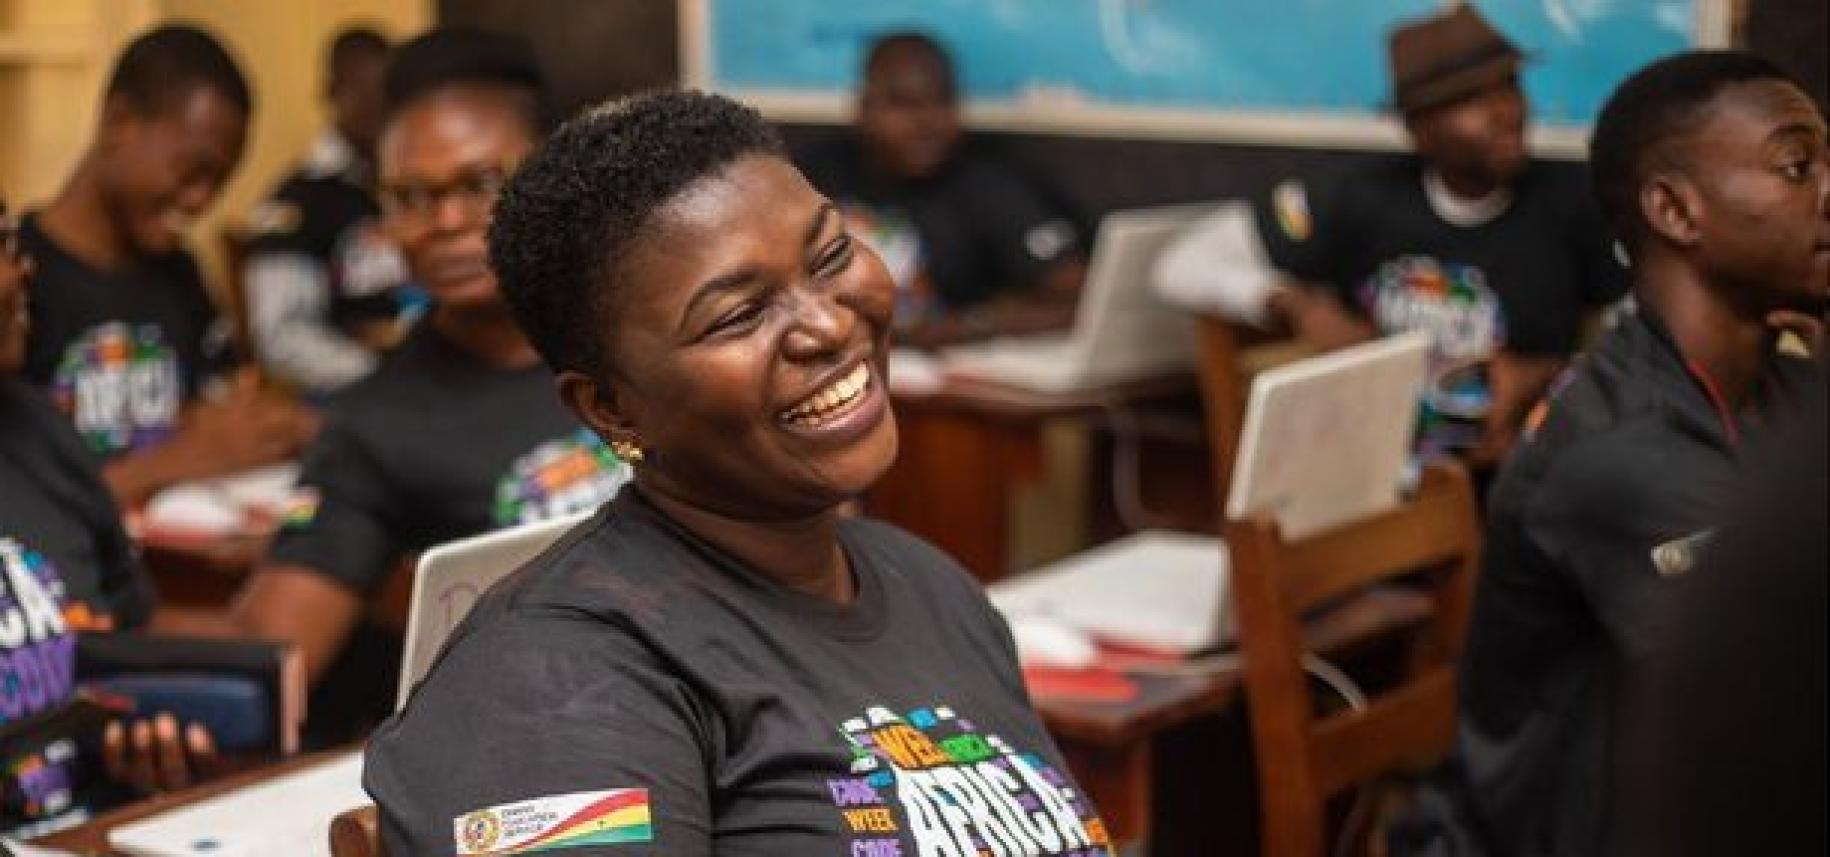 en Namibie, une jeune femme aux cheveux très courts portant un t-shirt affichant le logo de la Semaine africaine du code est photographiée dans une salle de classe en train de rire.